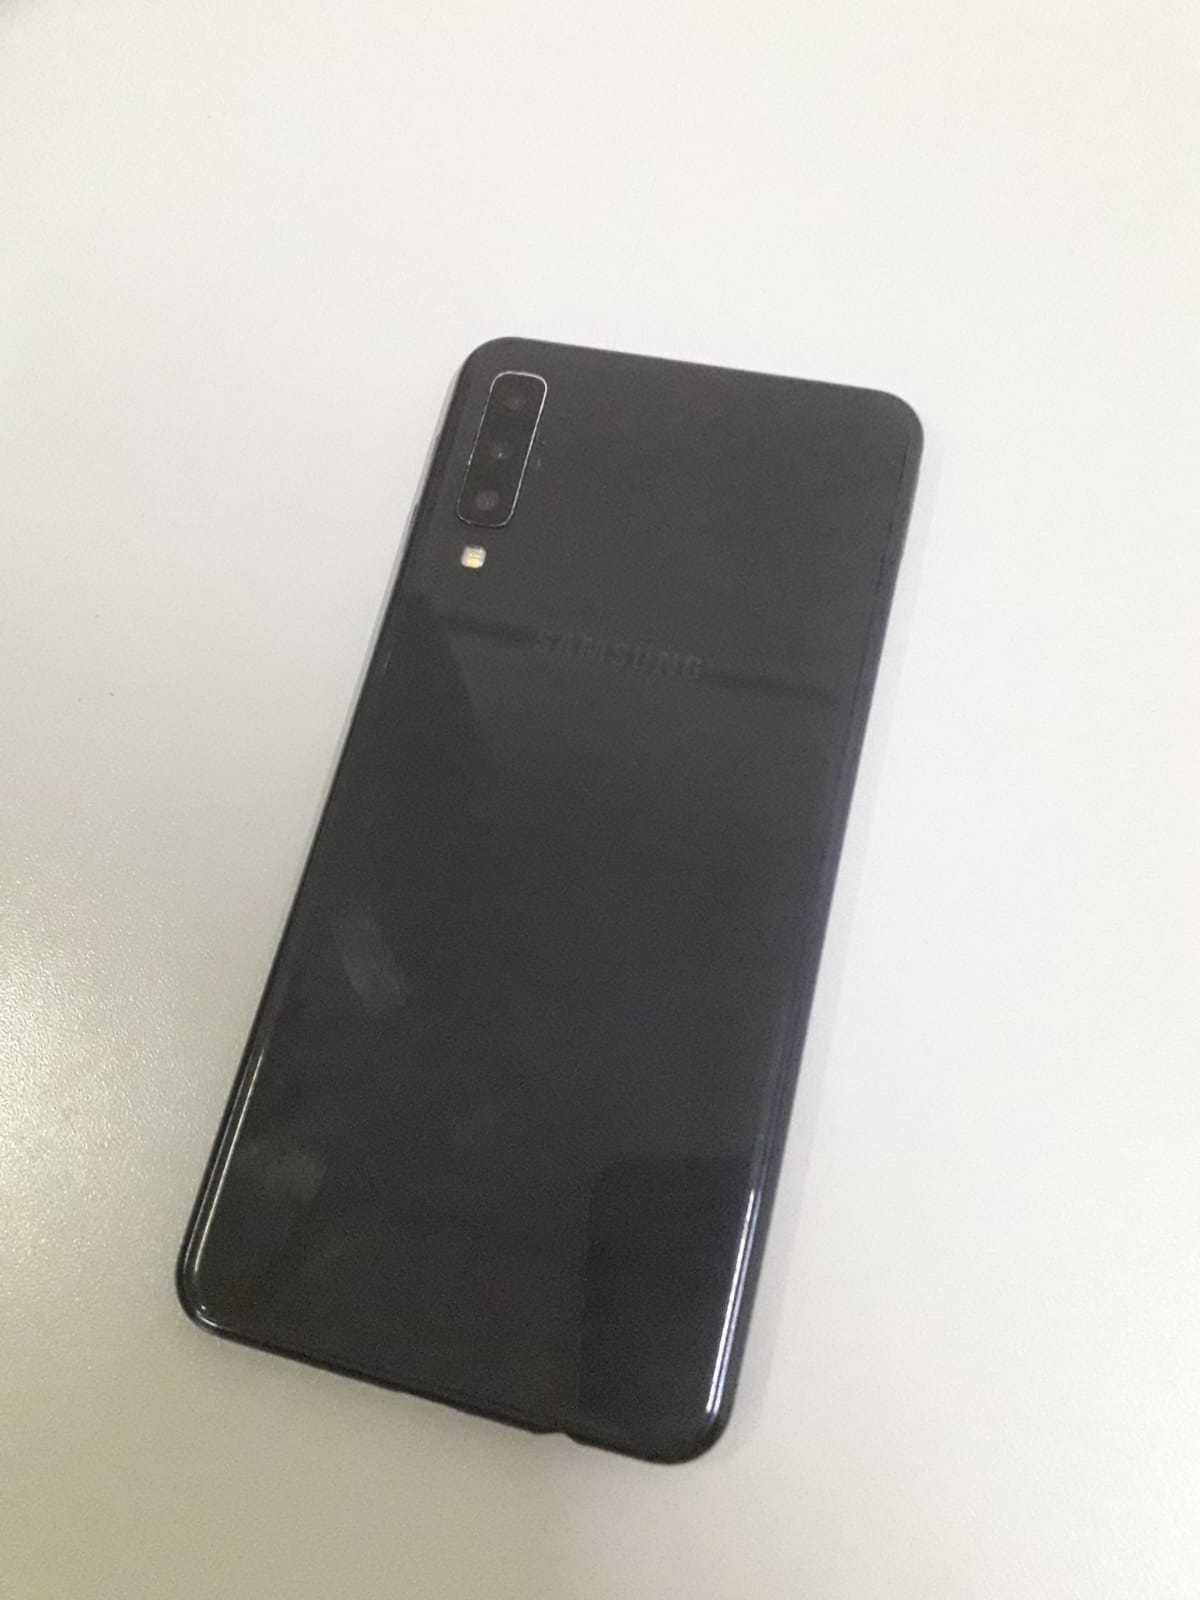 Samsung Galaxy A7 black 2018